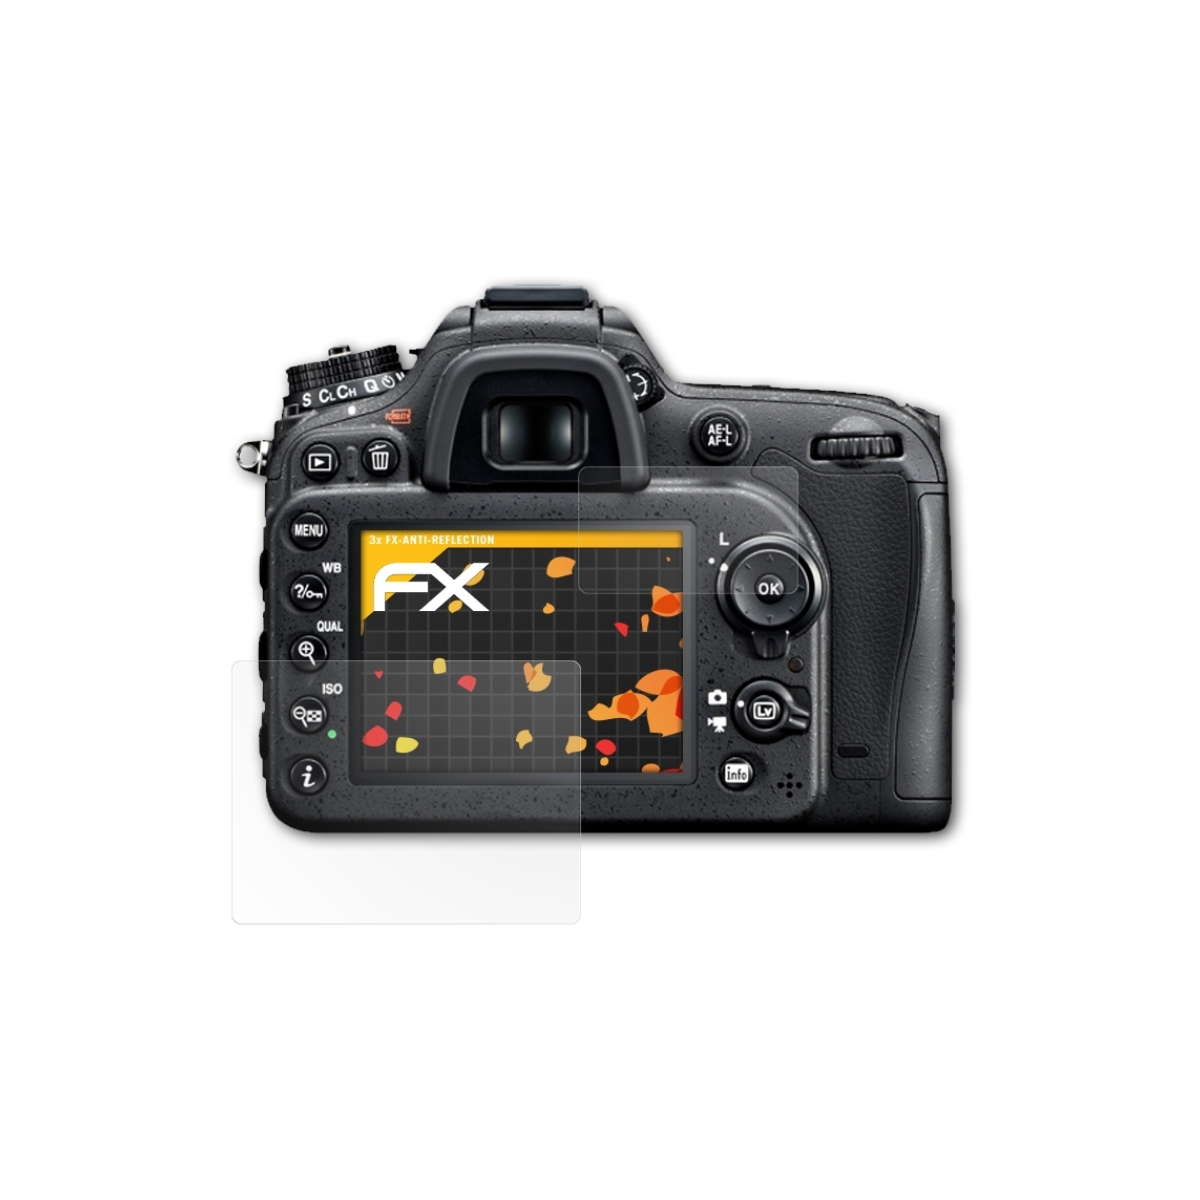 3x Nikon FX-Antireflex Displayschutz(für ATFOLIX D7100)